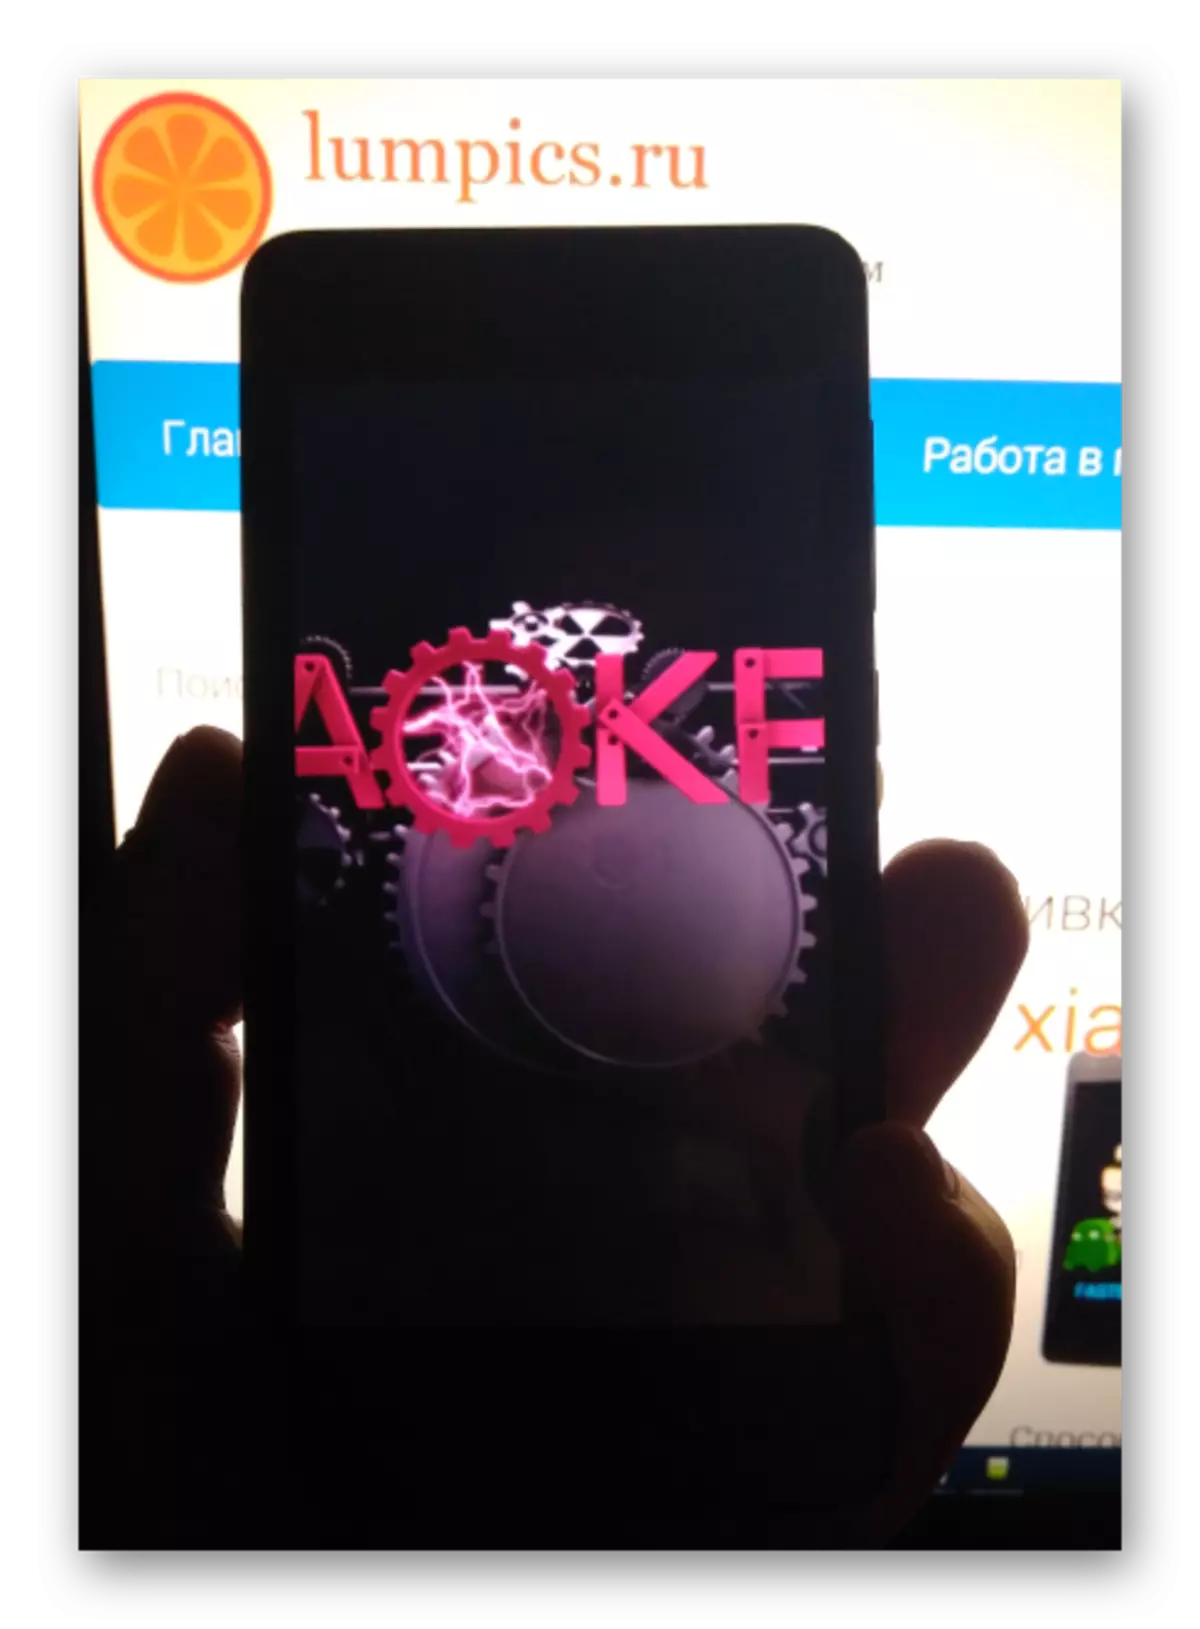 Azalpen tornado AOKP firmware pertsonalizatua Android 6.0 oinarritutako instalazioa hasi ondoren